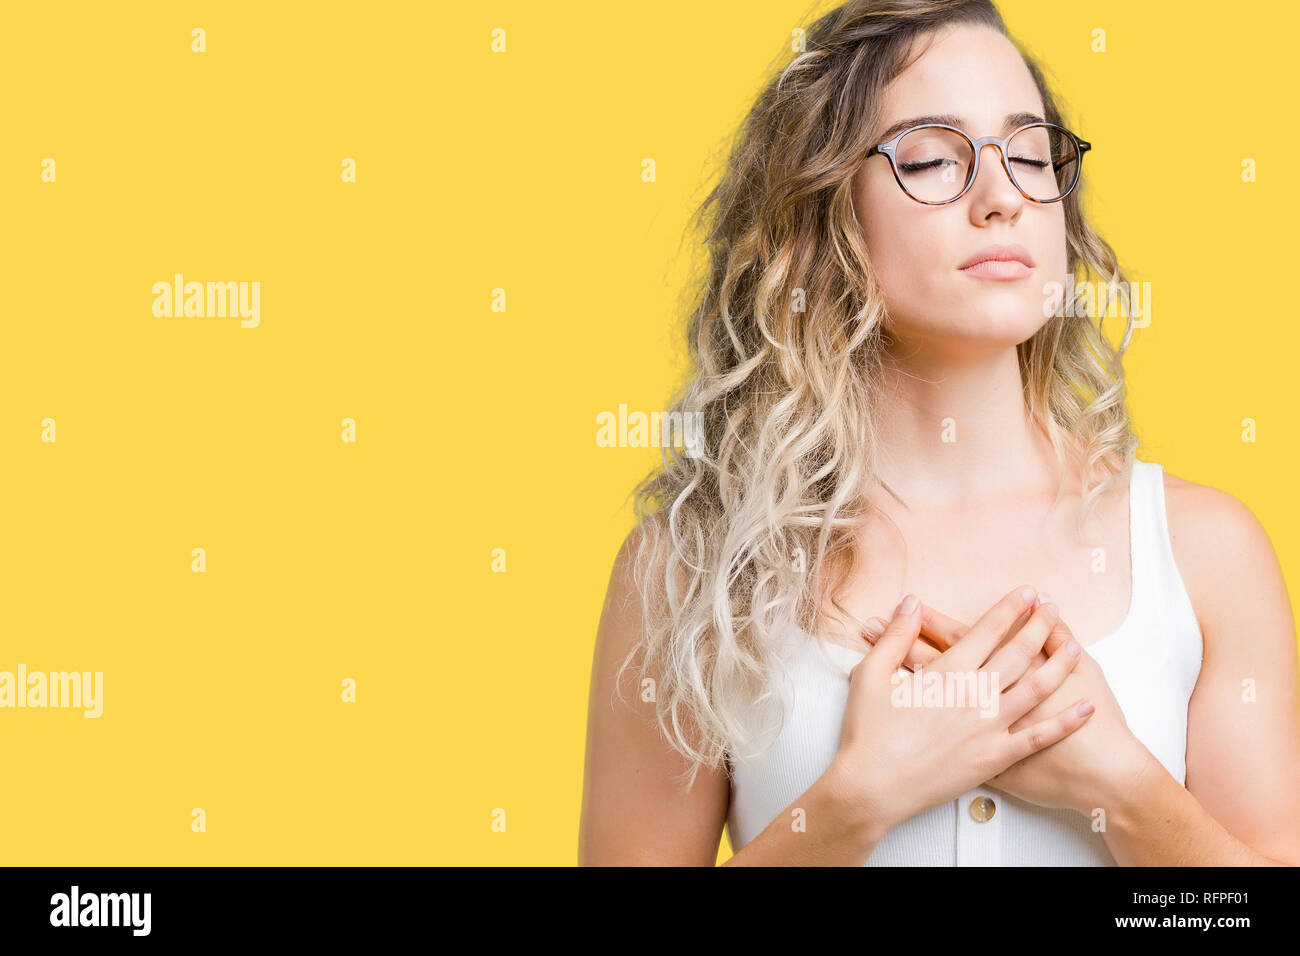 Schöne junge blonde Frau Brille über isolierte Hintergrund lächelnd mit der  Hand auf der Brust mit geschlossenen Augen und dankbare Geste auf das  Gesicht. Gesundheit Stockfotografie - Alamy